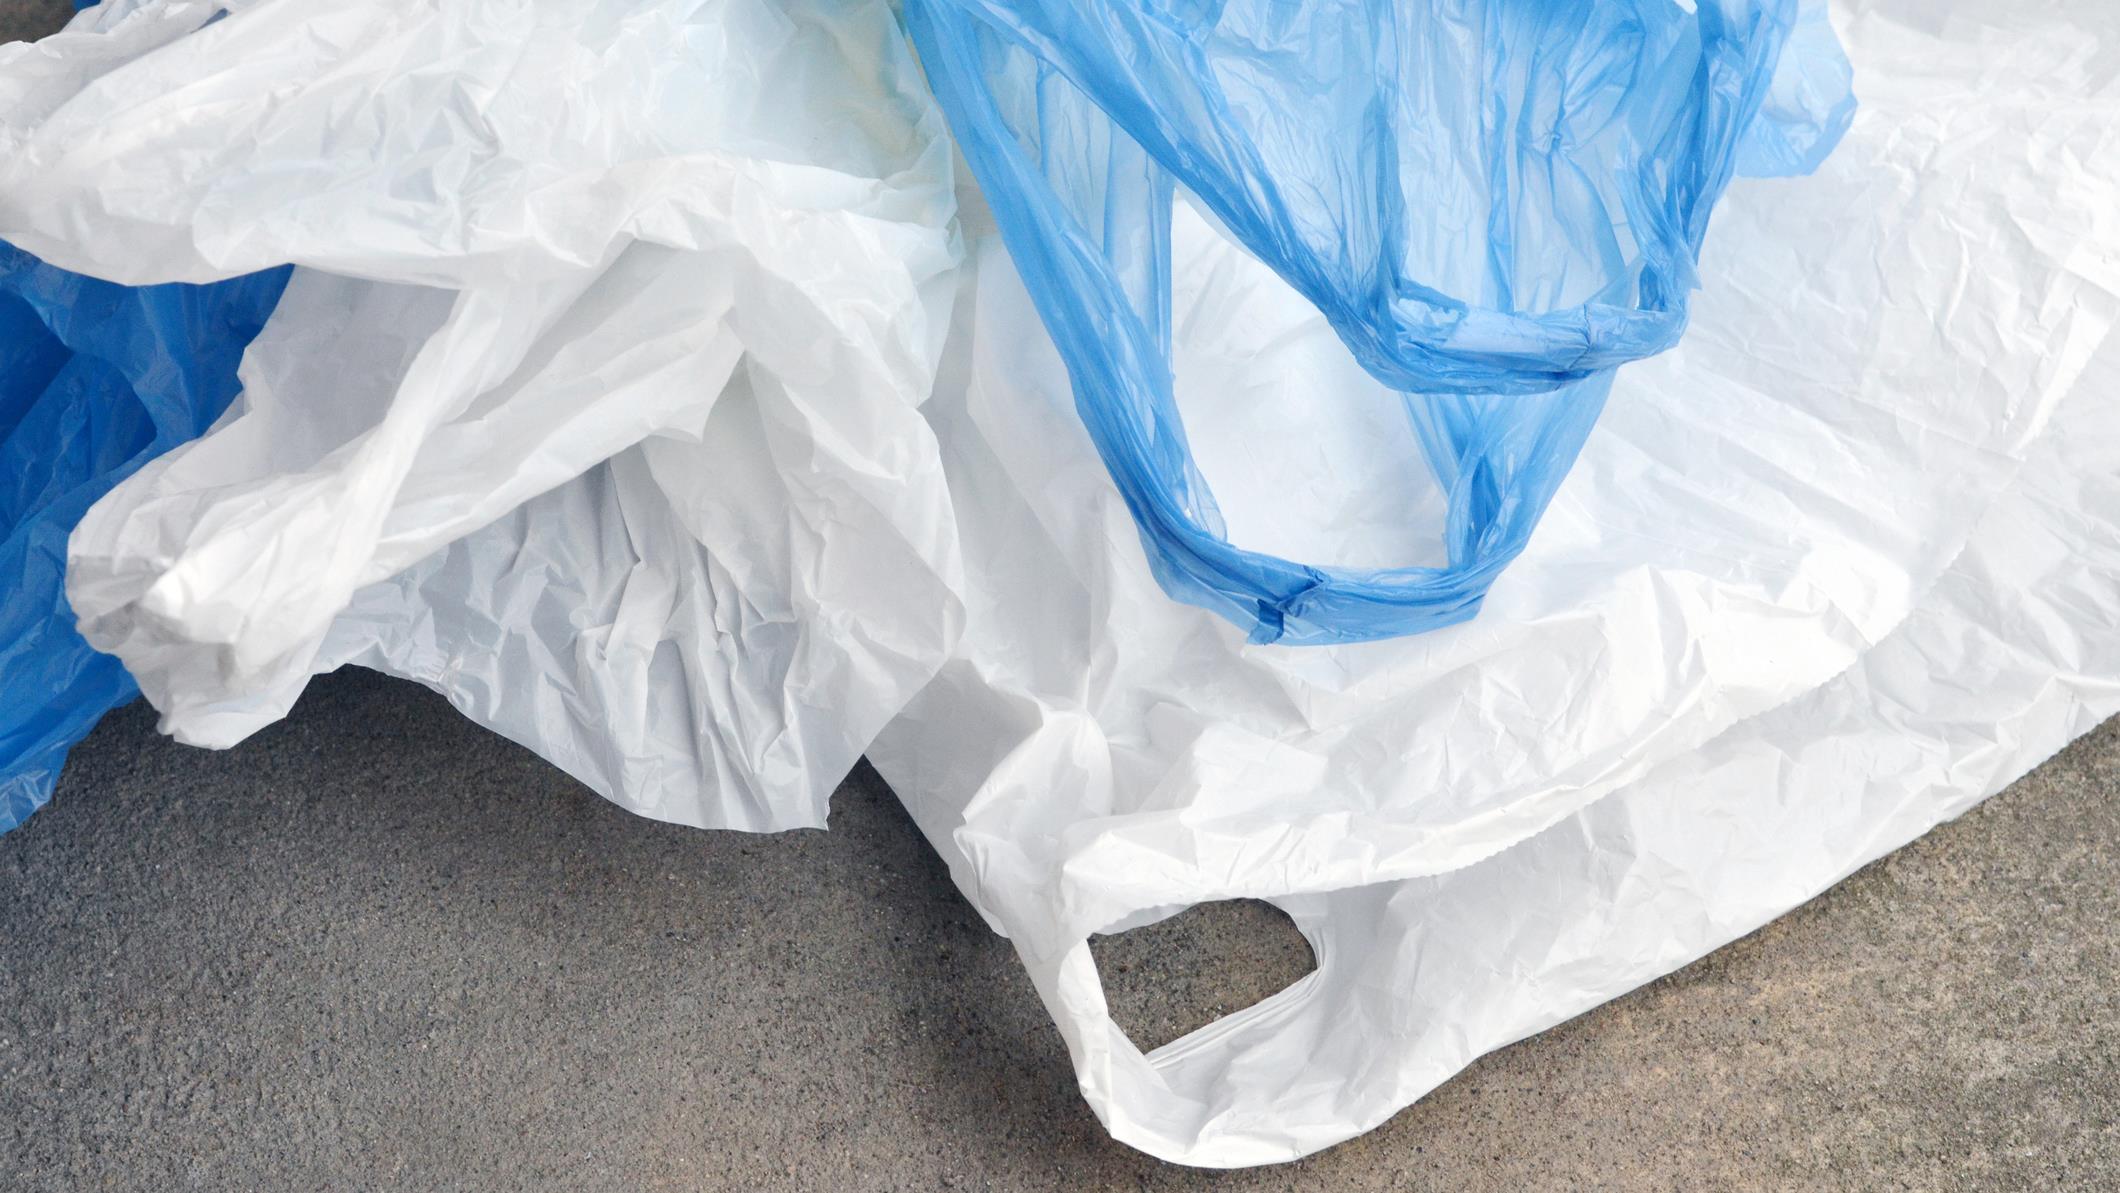 Prolifération de sacs plastiques : l'anomalie américaine